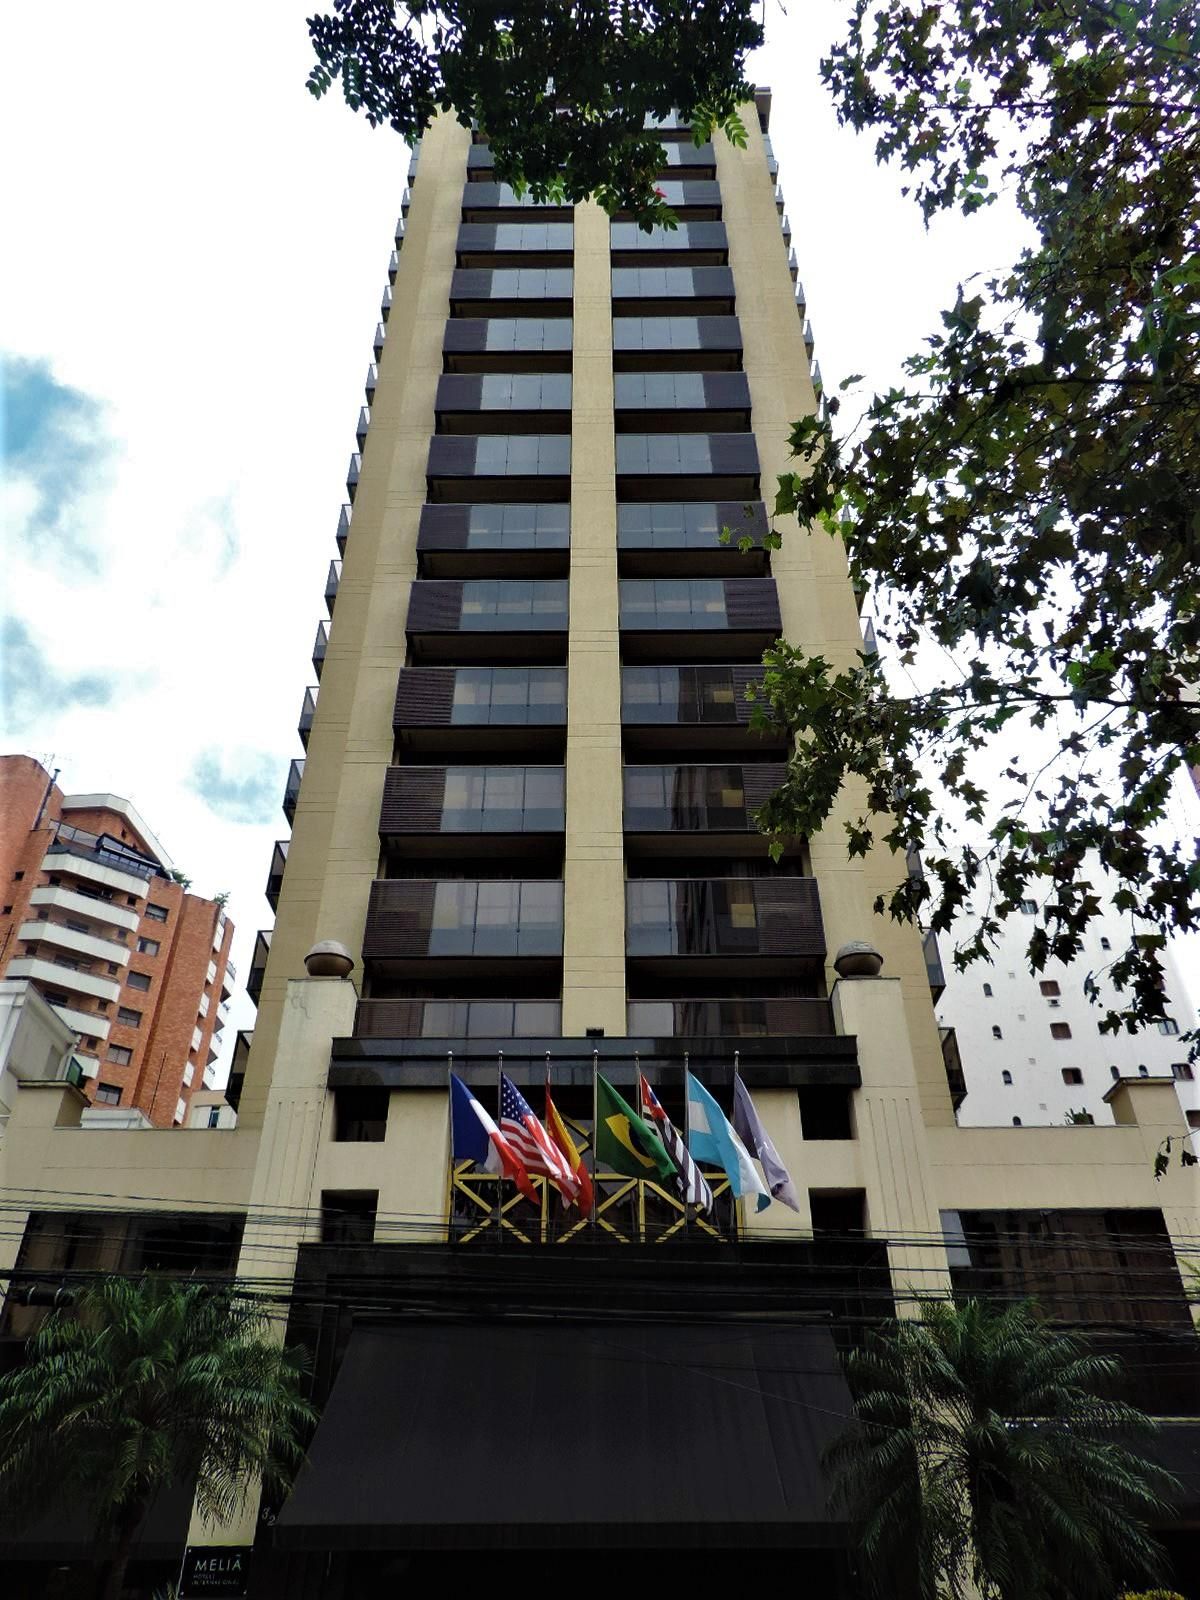 ITAIM SAO PAULO HOTEL BY ATLAN